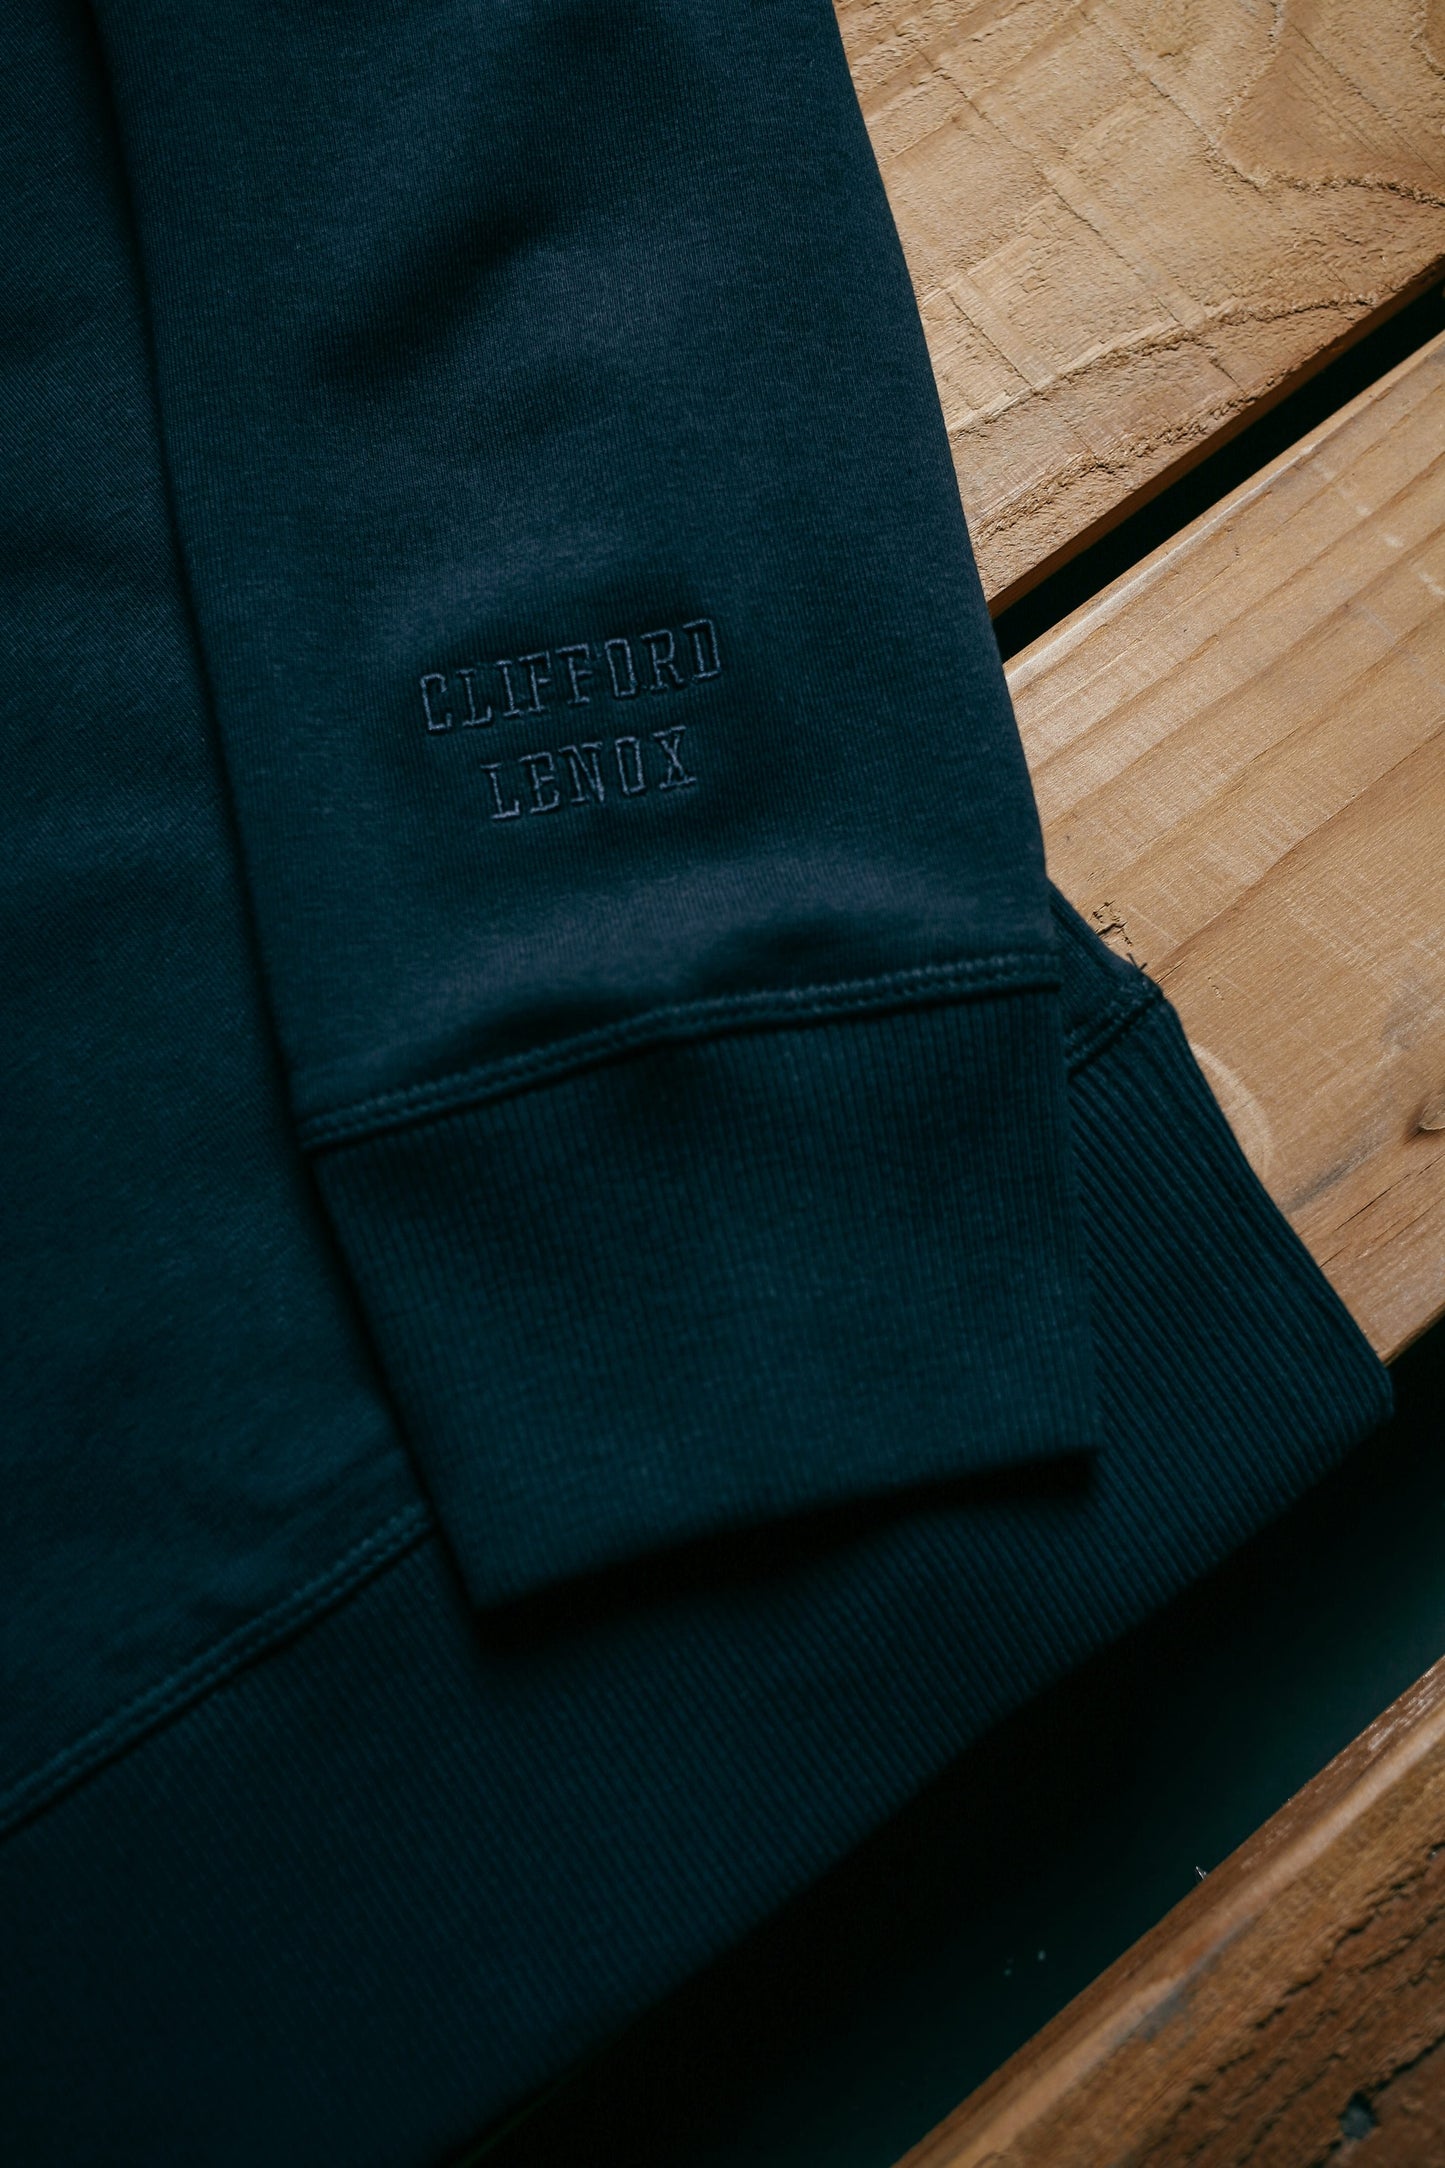 Core Hooded Sweatshirt // Navy